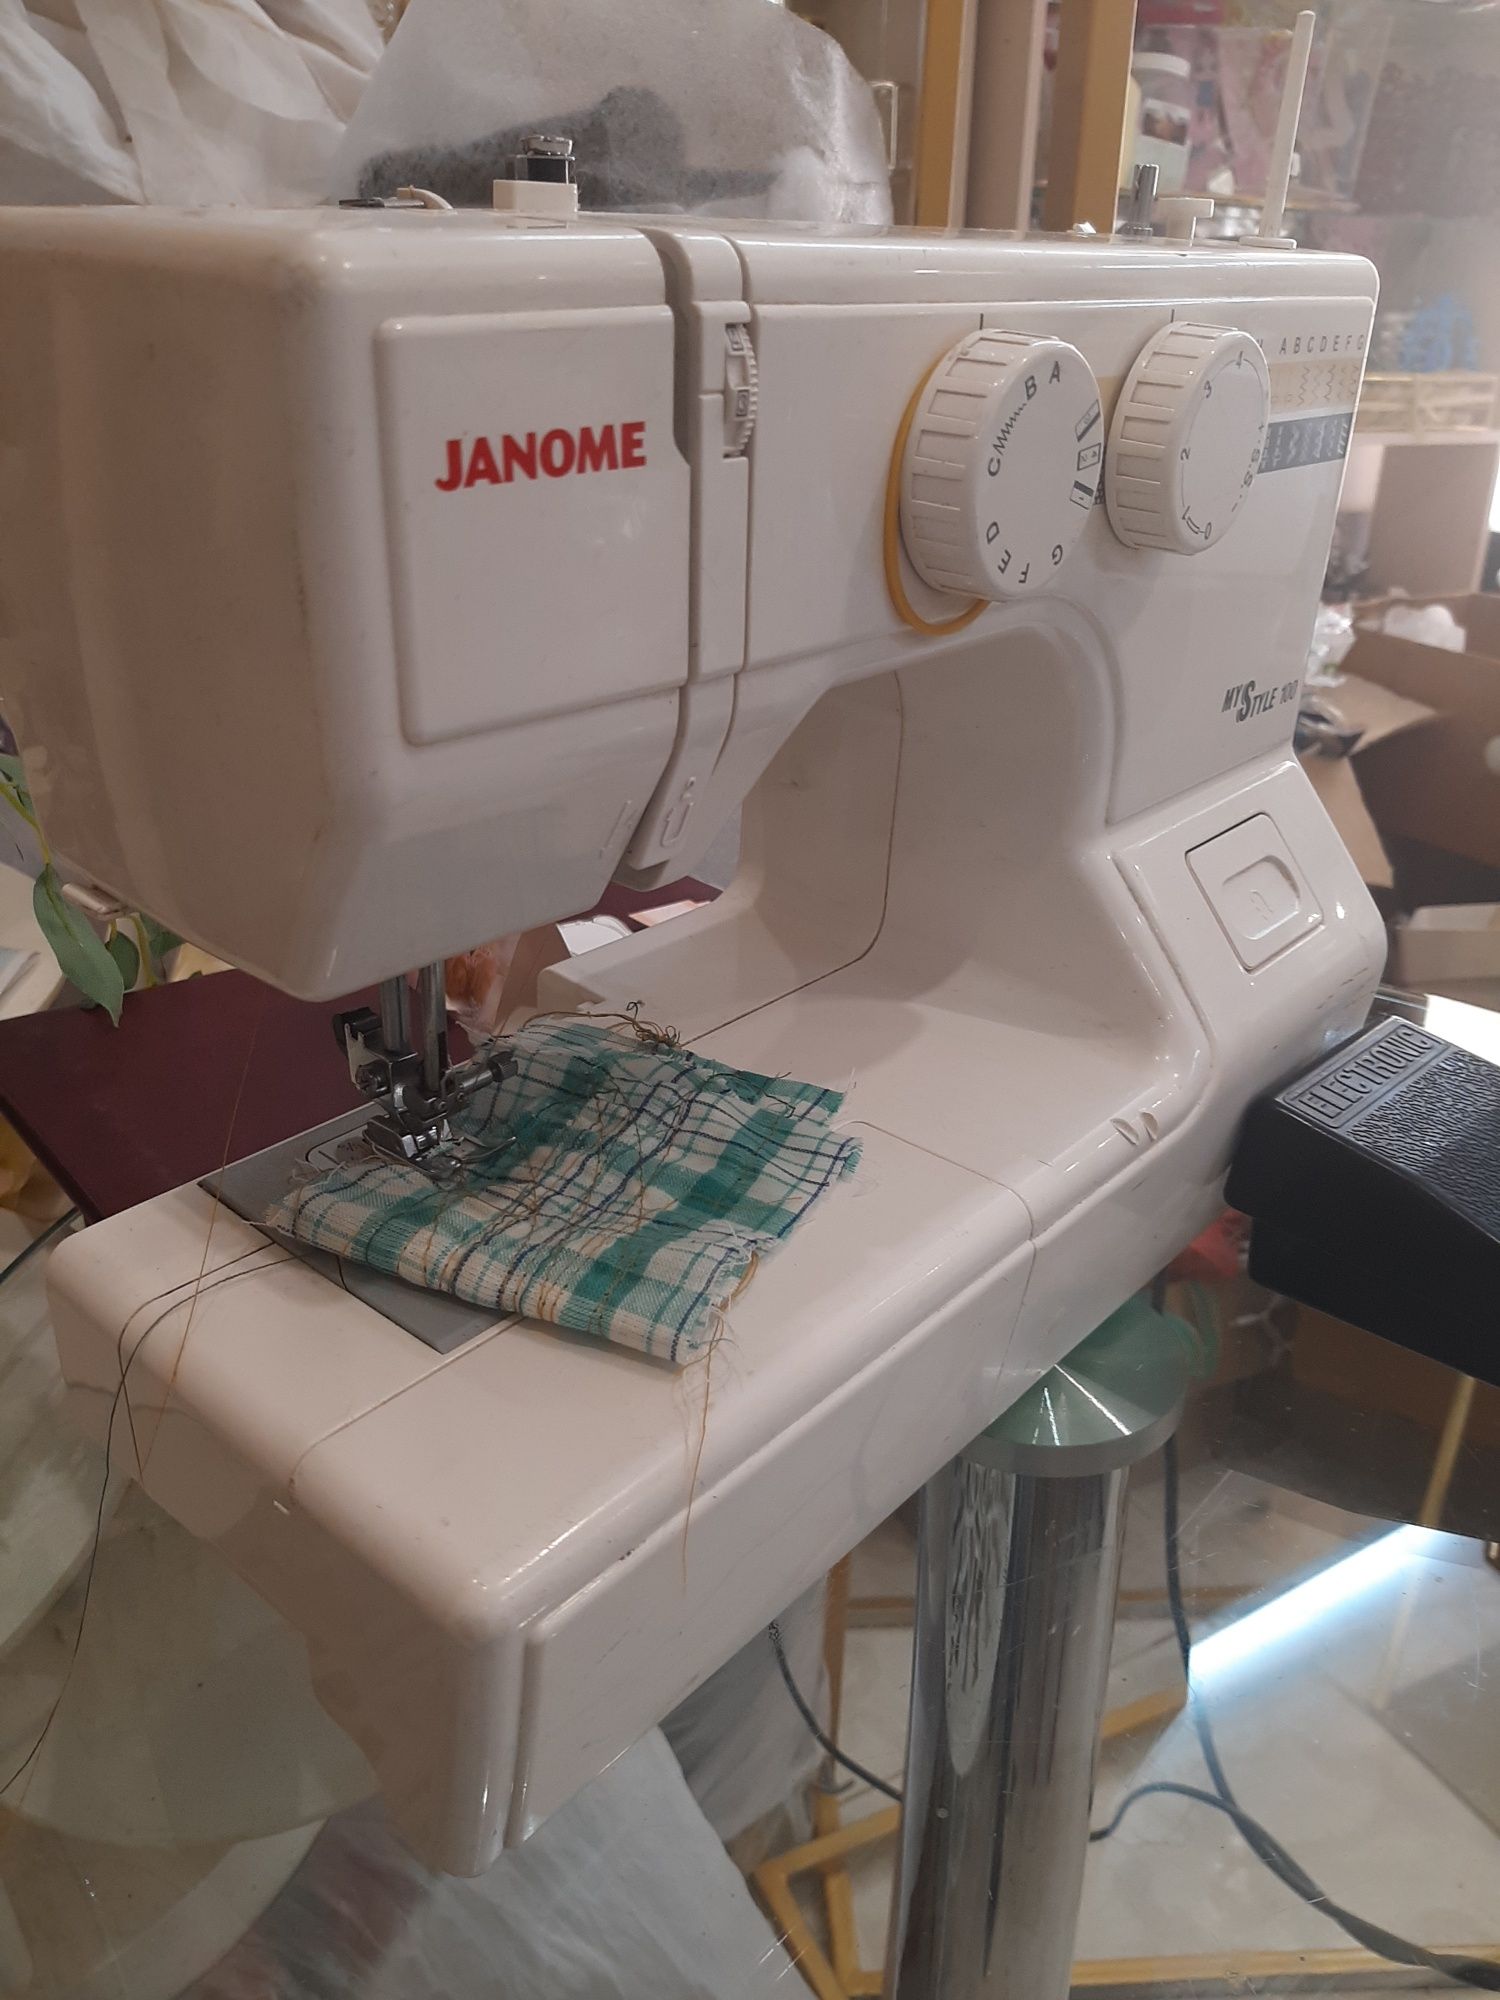 Janome my style 100 швейная машинка